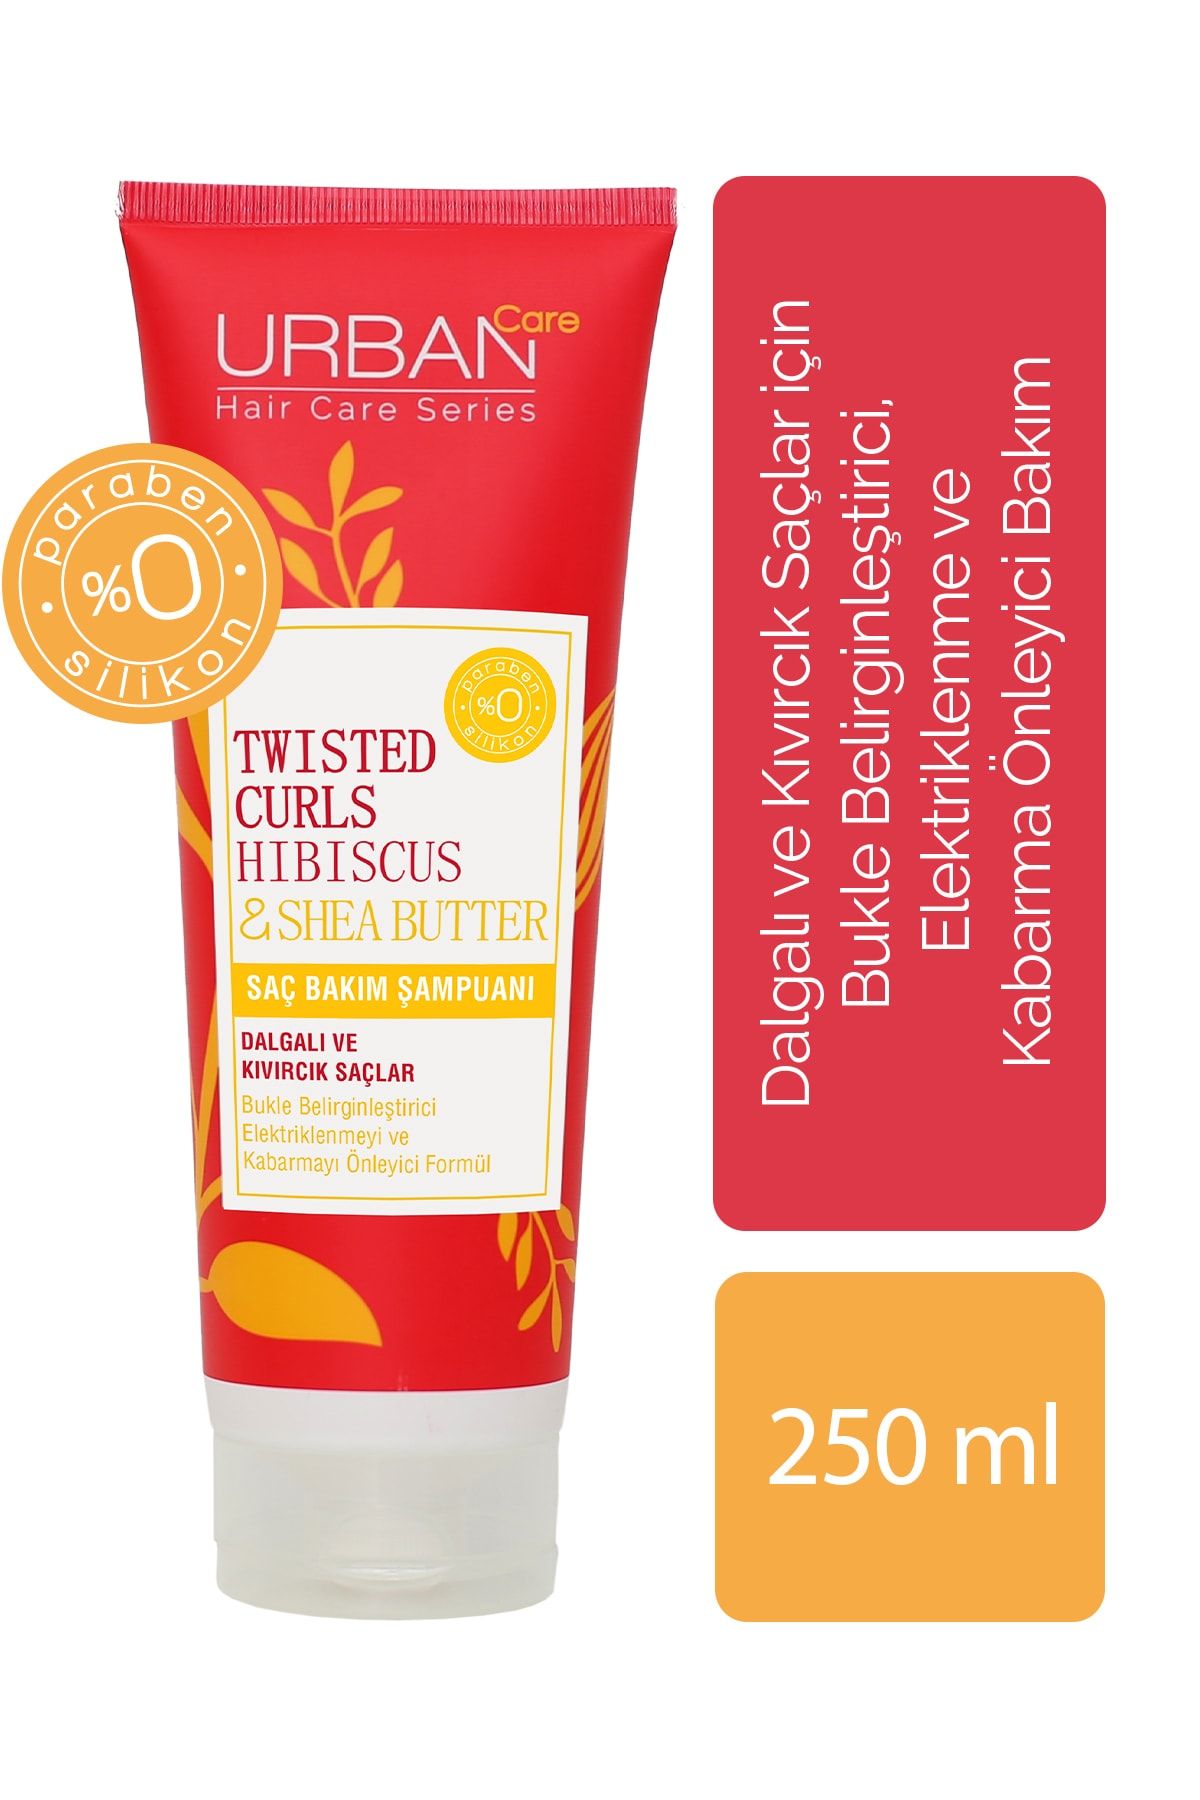 Urban Care Twisted Curls Hibiscus & Shea Butter Kıvırcık Saçlar Için Şampuan 250ml